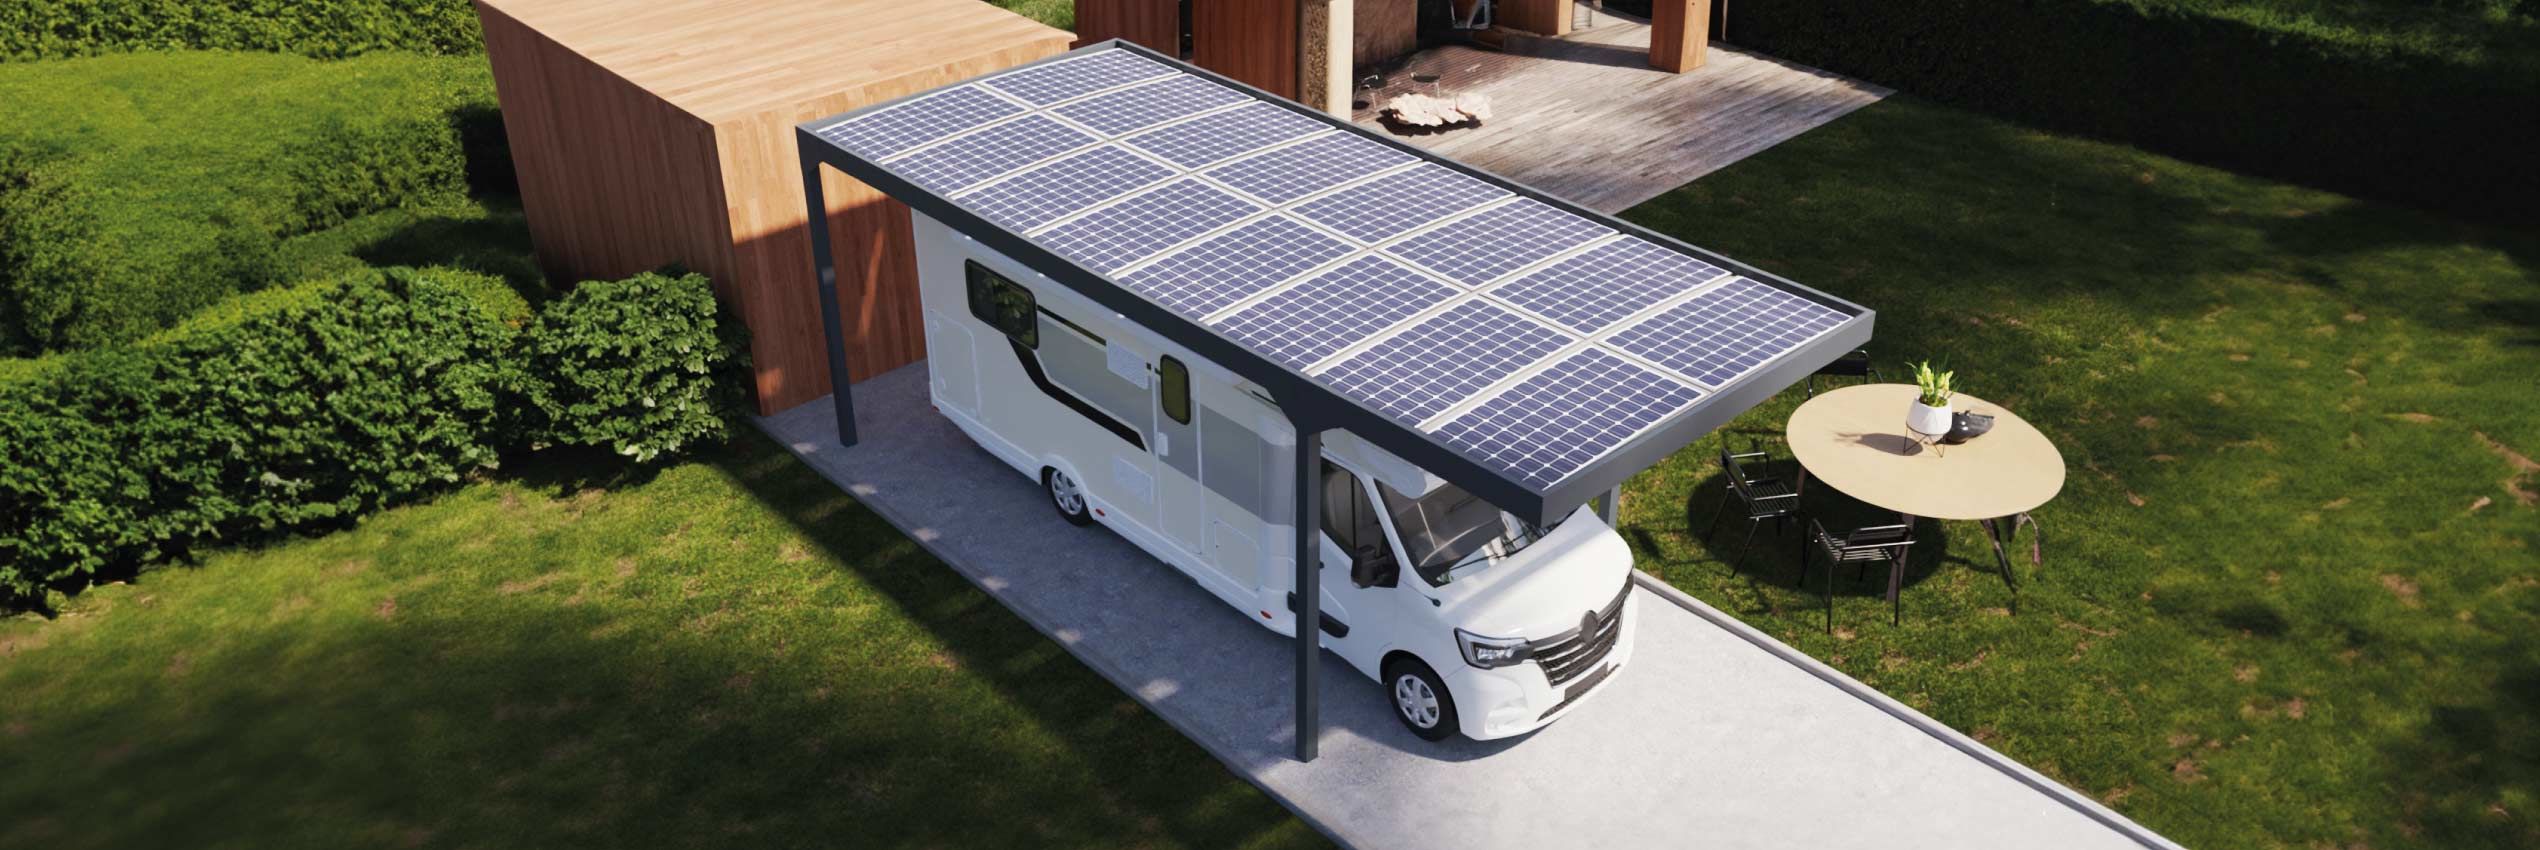 Carport Camper Solar ...ENERGIE FÜR IHR HAUS UND WOHNWAGEN